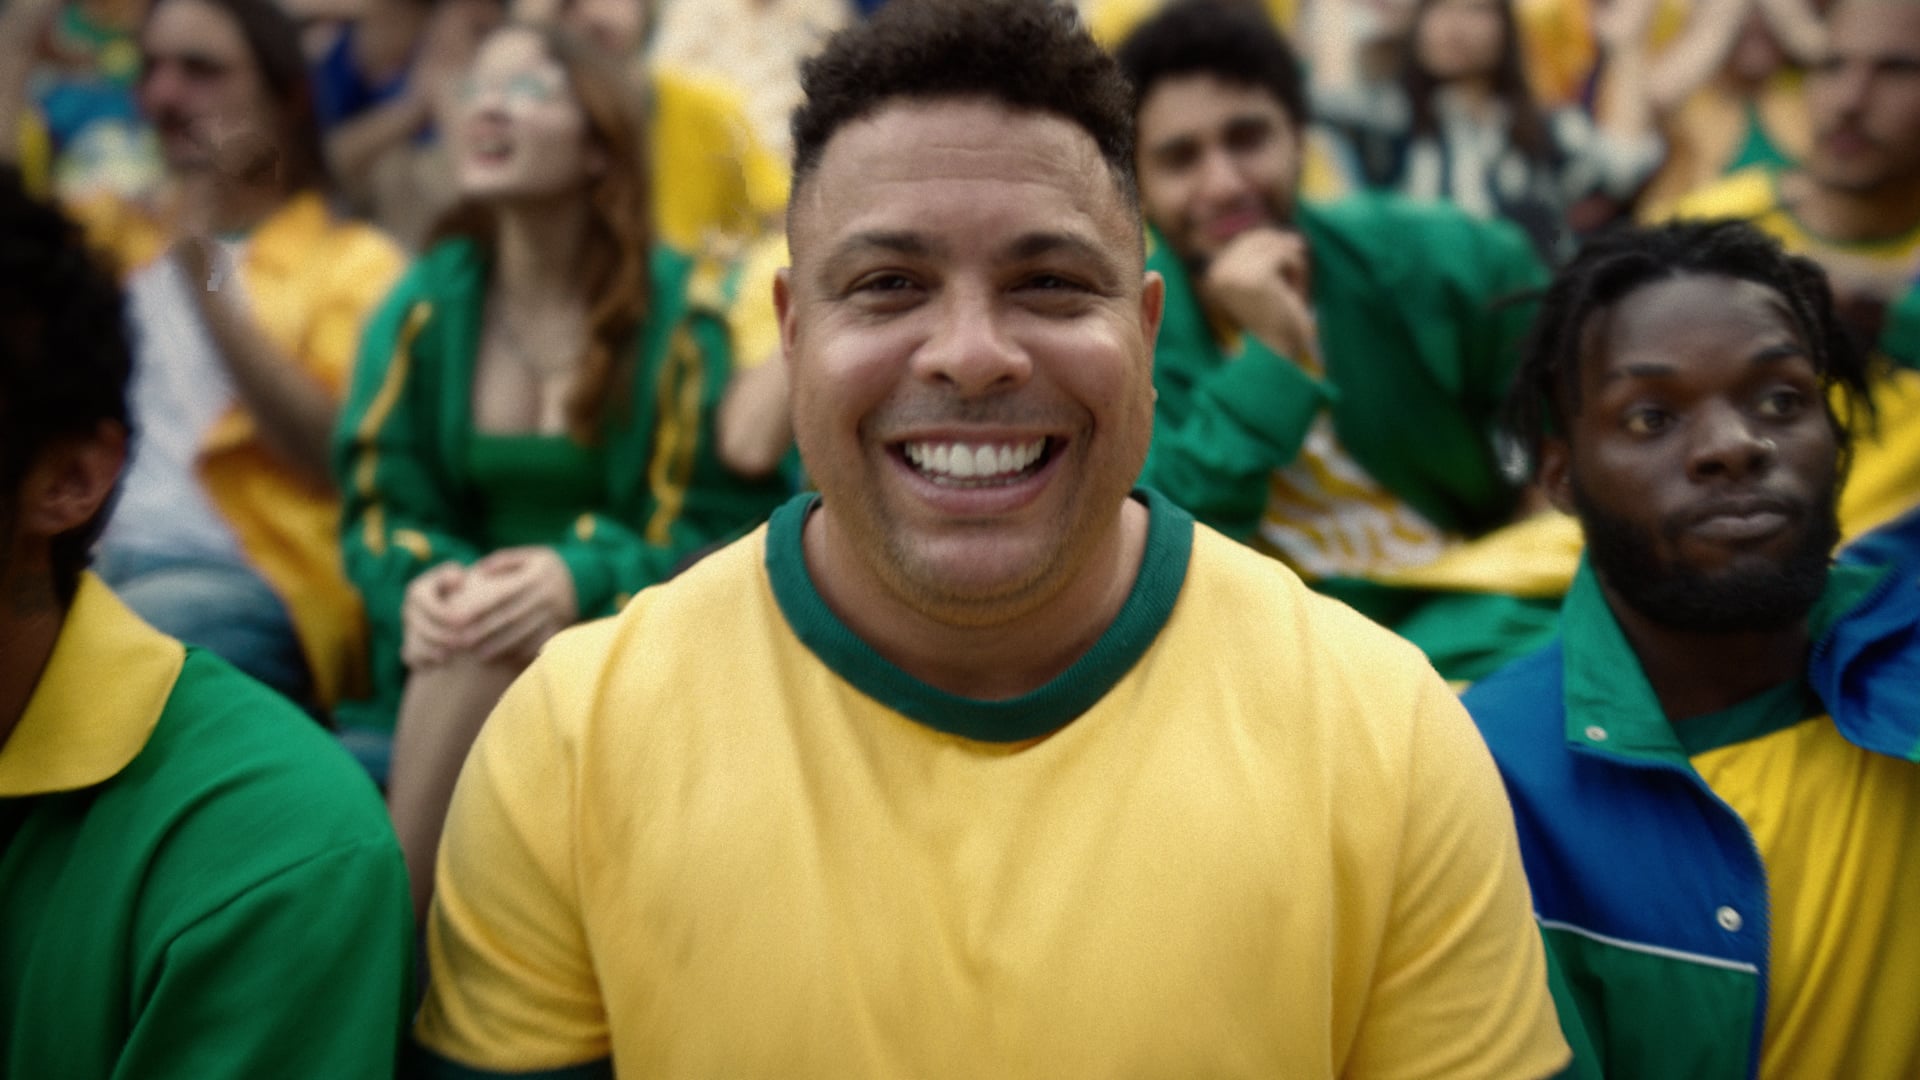 Betfair Brasil on X: Agora já pode assistir ao vivo e grátis a todos os  jogos da Libertadores e Sul-Americana na #BetfairTV 🖥⚽️ Com esta  oportunidade, você pode fazer suas apostas enquanto